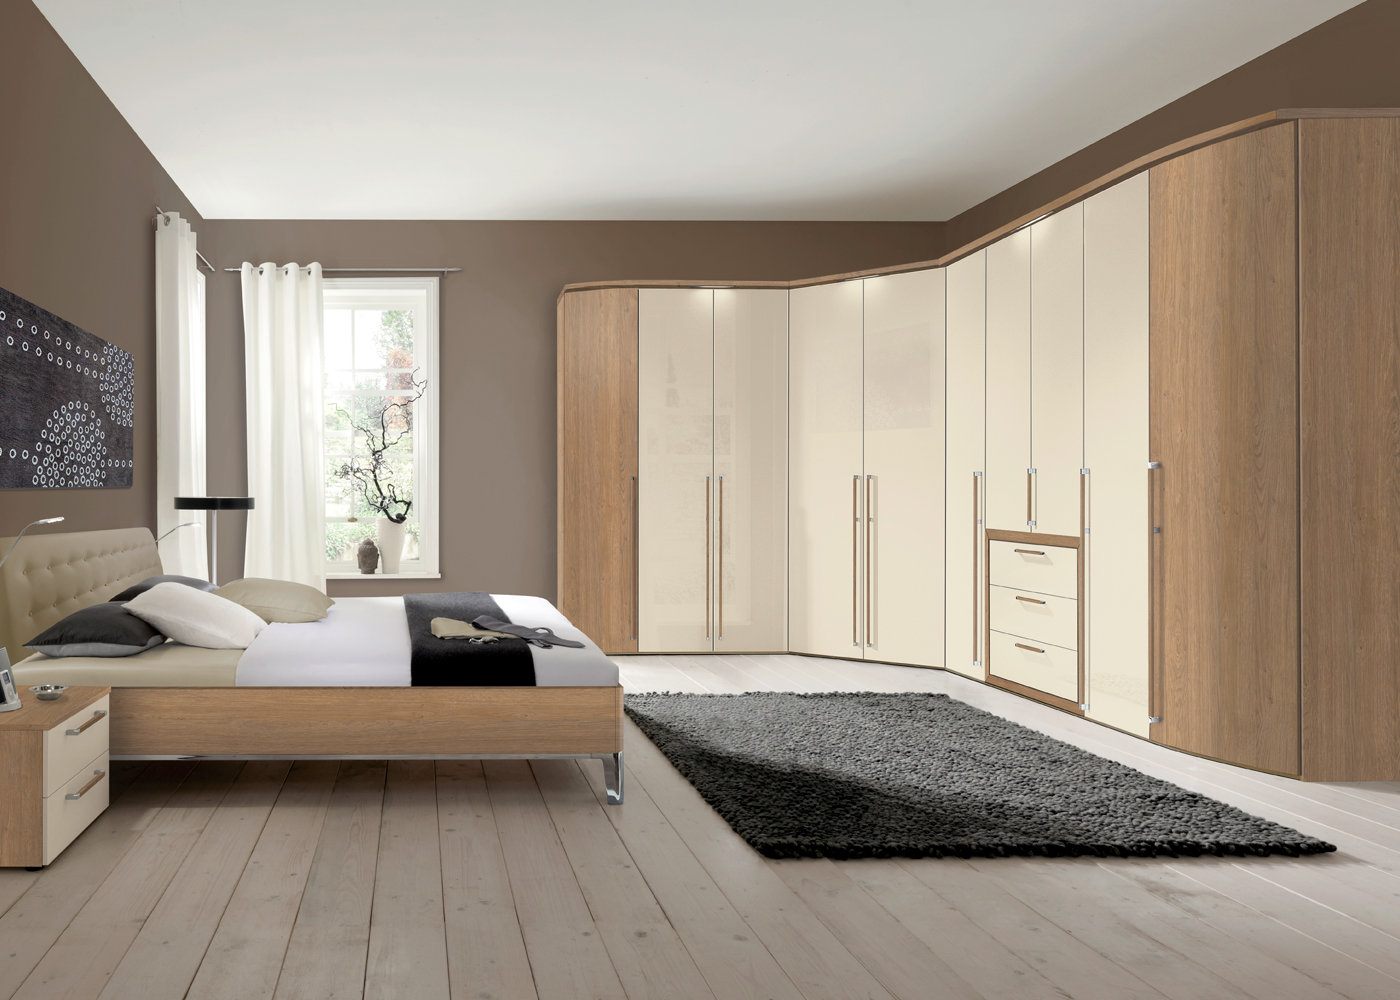 nolte bedroom furniture uk